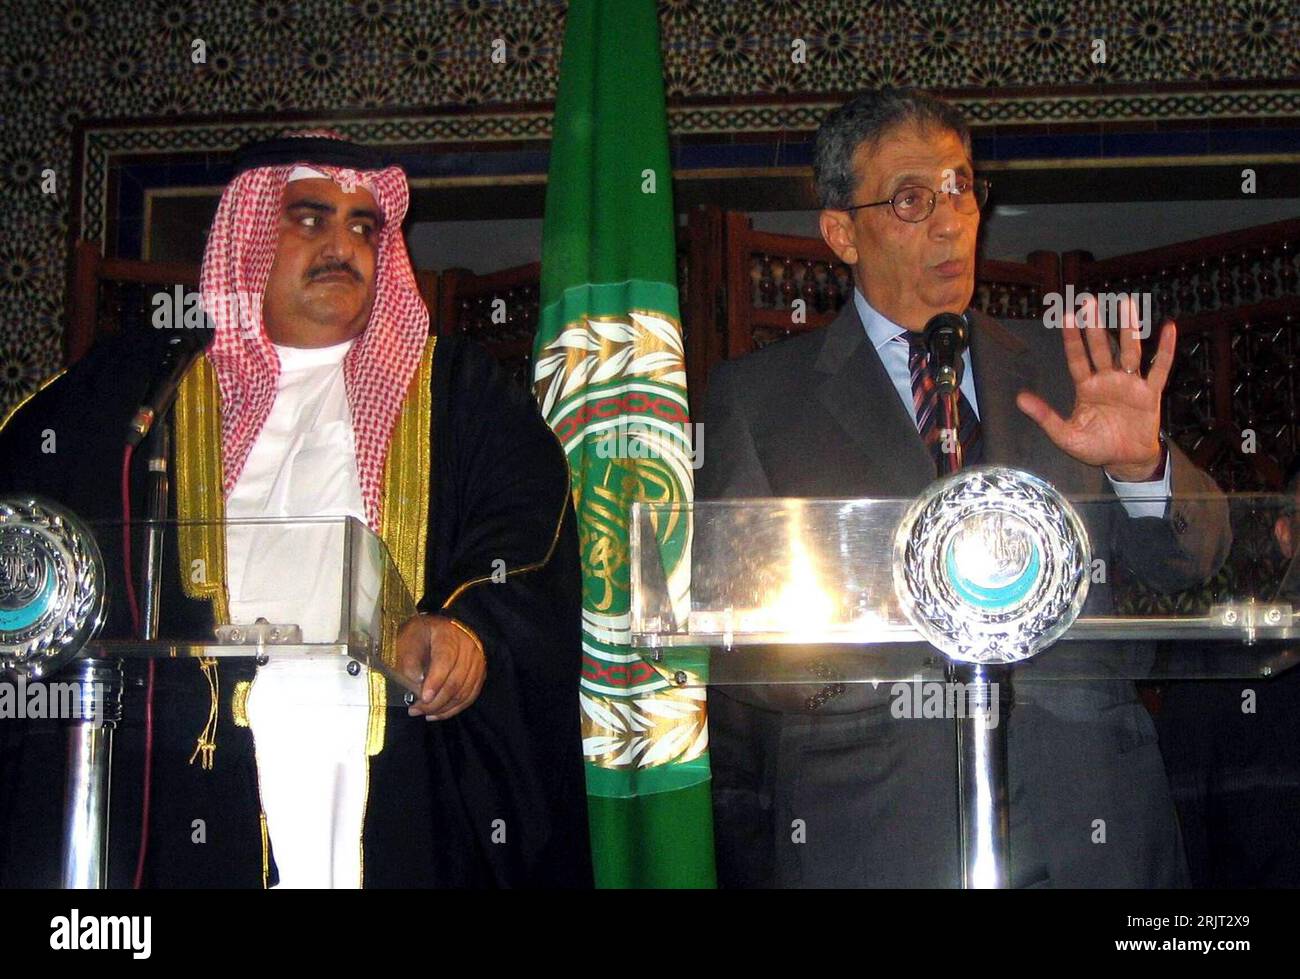 Bildnummer: 51549647  Datum: 12.11.2006  Copyright: imago/Xinhua Amr Mussa (re., EGY/Generalsekretär der Arabischen Liga) und Außenminister Scheich Mohammed bin Mubarak Al Khalifa (BRN) während einer Dringlichkeitssitzung der Arabischen Liga zum Nahostkonflikt in Kairo  -   PUBLICATIONxNOTxINxCHN, Personen; 2006, Kairo, Politiker, Konferenzen , Pressekonferenz , Pressetermin; , quer, Kbdig, Gruppenbild, close, Internationale Politik, Politik, Ägypten, Randbild, People Stock Photo